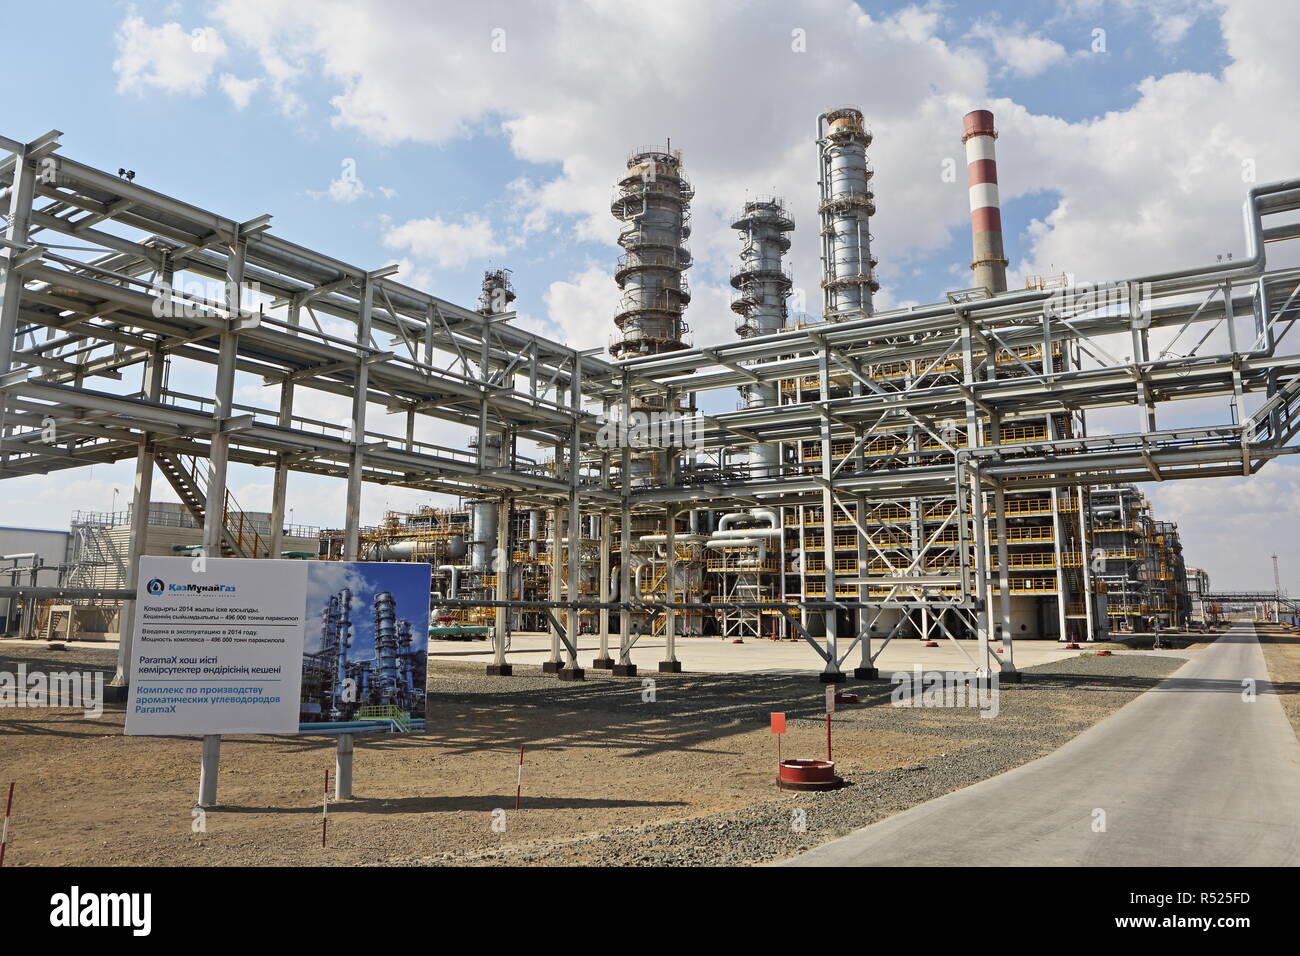 La nouvelle unité pétrochimique ParamaX KazMunaiGaz à 110 000 b/j de la raffinerie d'Atyrau au Kazakhstan a permis à des carburants propres de la production, production petrochem Banque D'Images